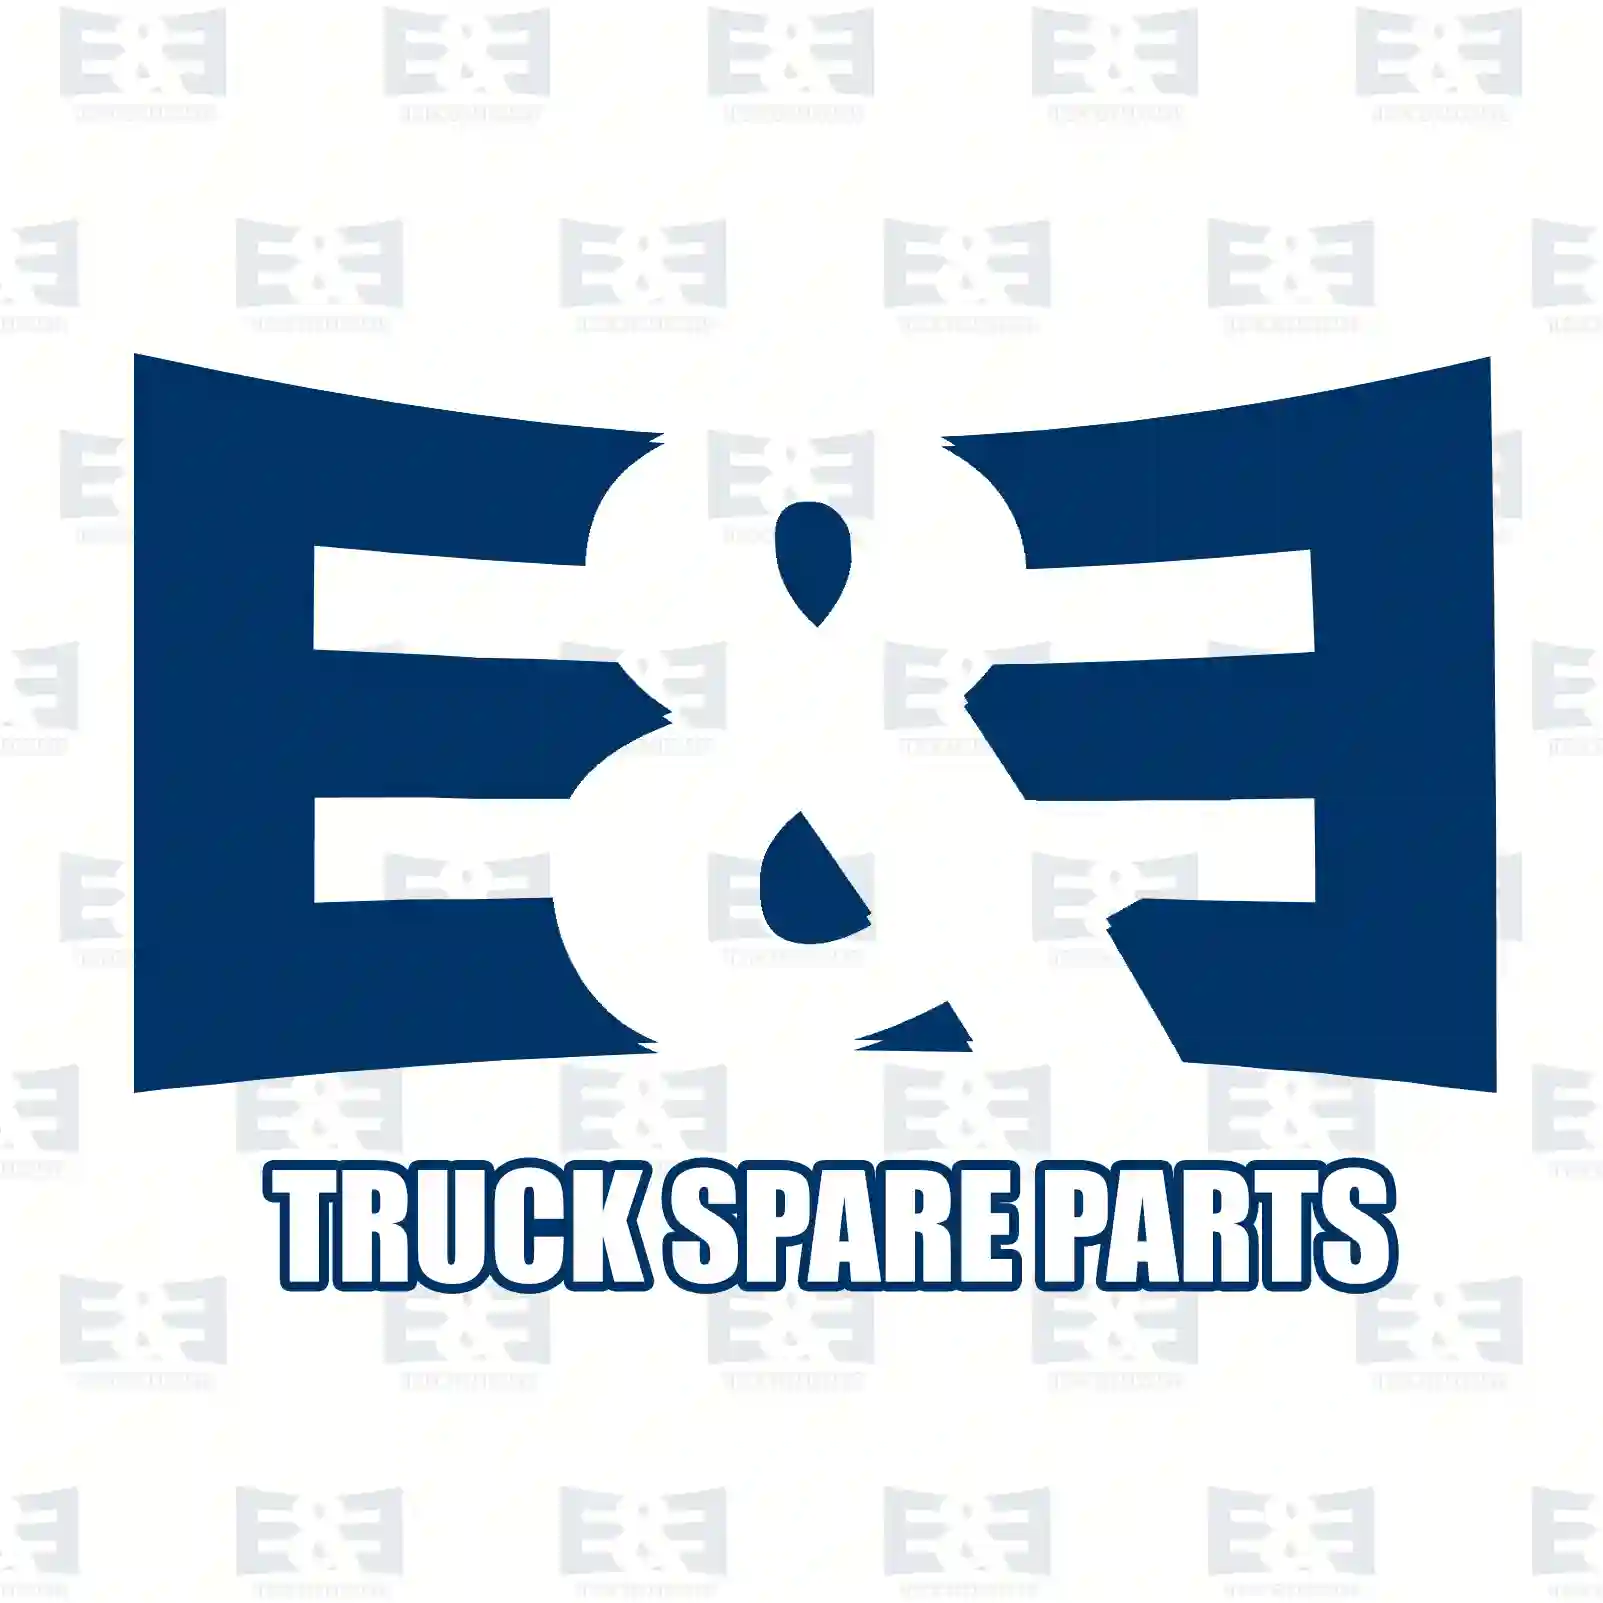 Propeller shaft, 2E2276774, 5010224140 ||  2E2276774 E&E Truck Spare Parts | Truck Spare Parts, Auotomotive Spare Parts Propeller shaft, 2E2276774, 5010224140 ||  2E2276774 E&E Truck Spare Parts | Truck Spare Parts, Auotomotive Spare Parts